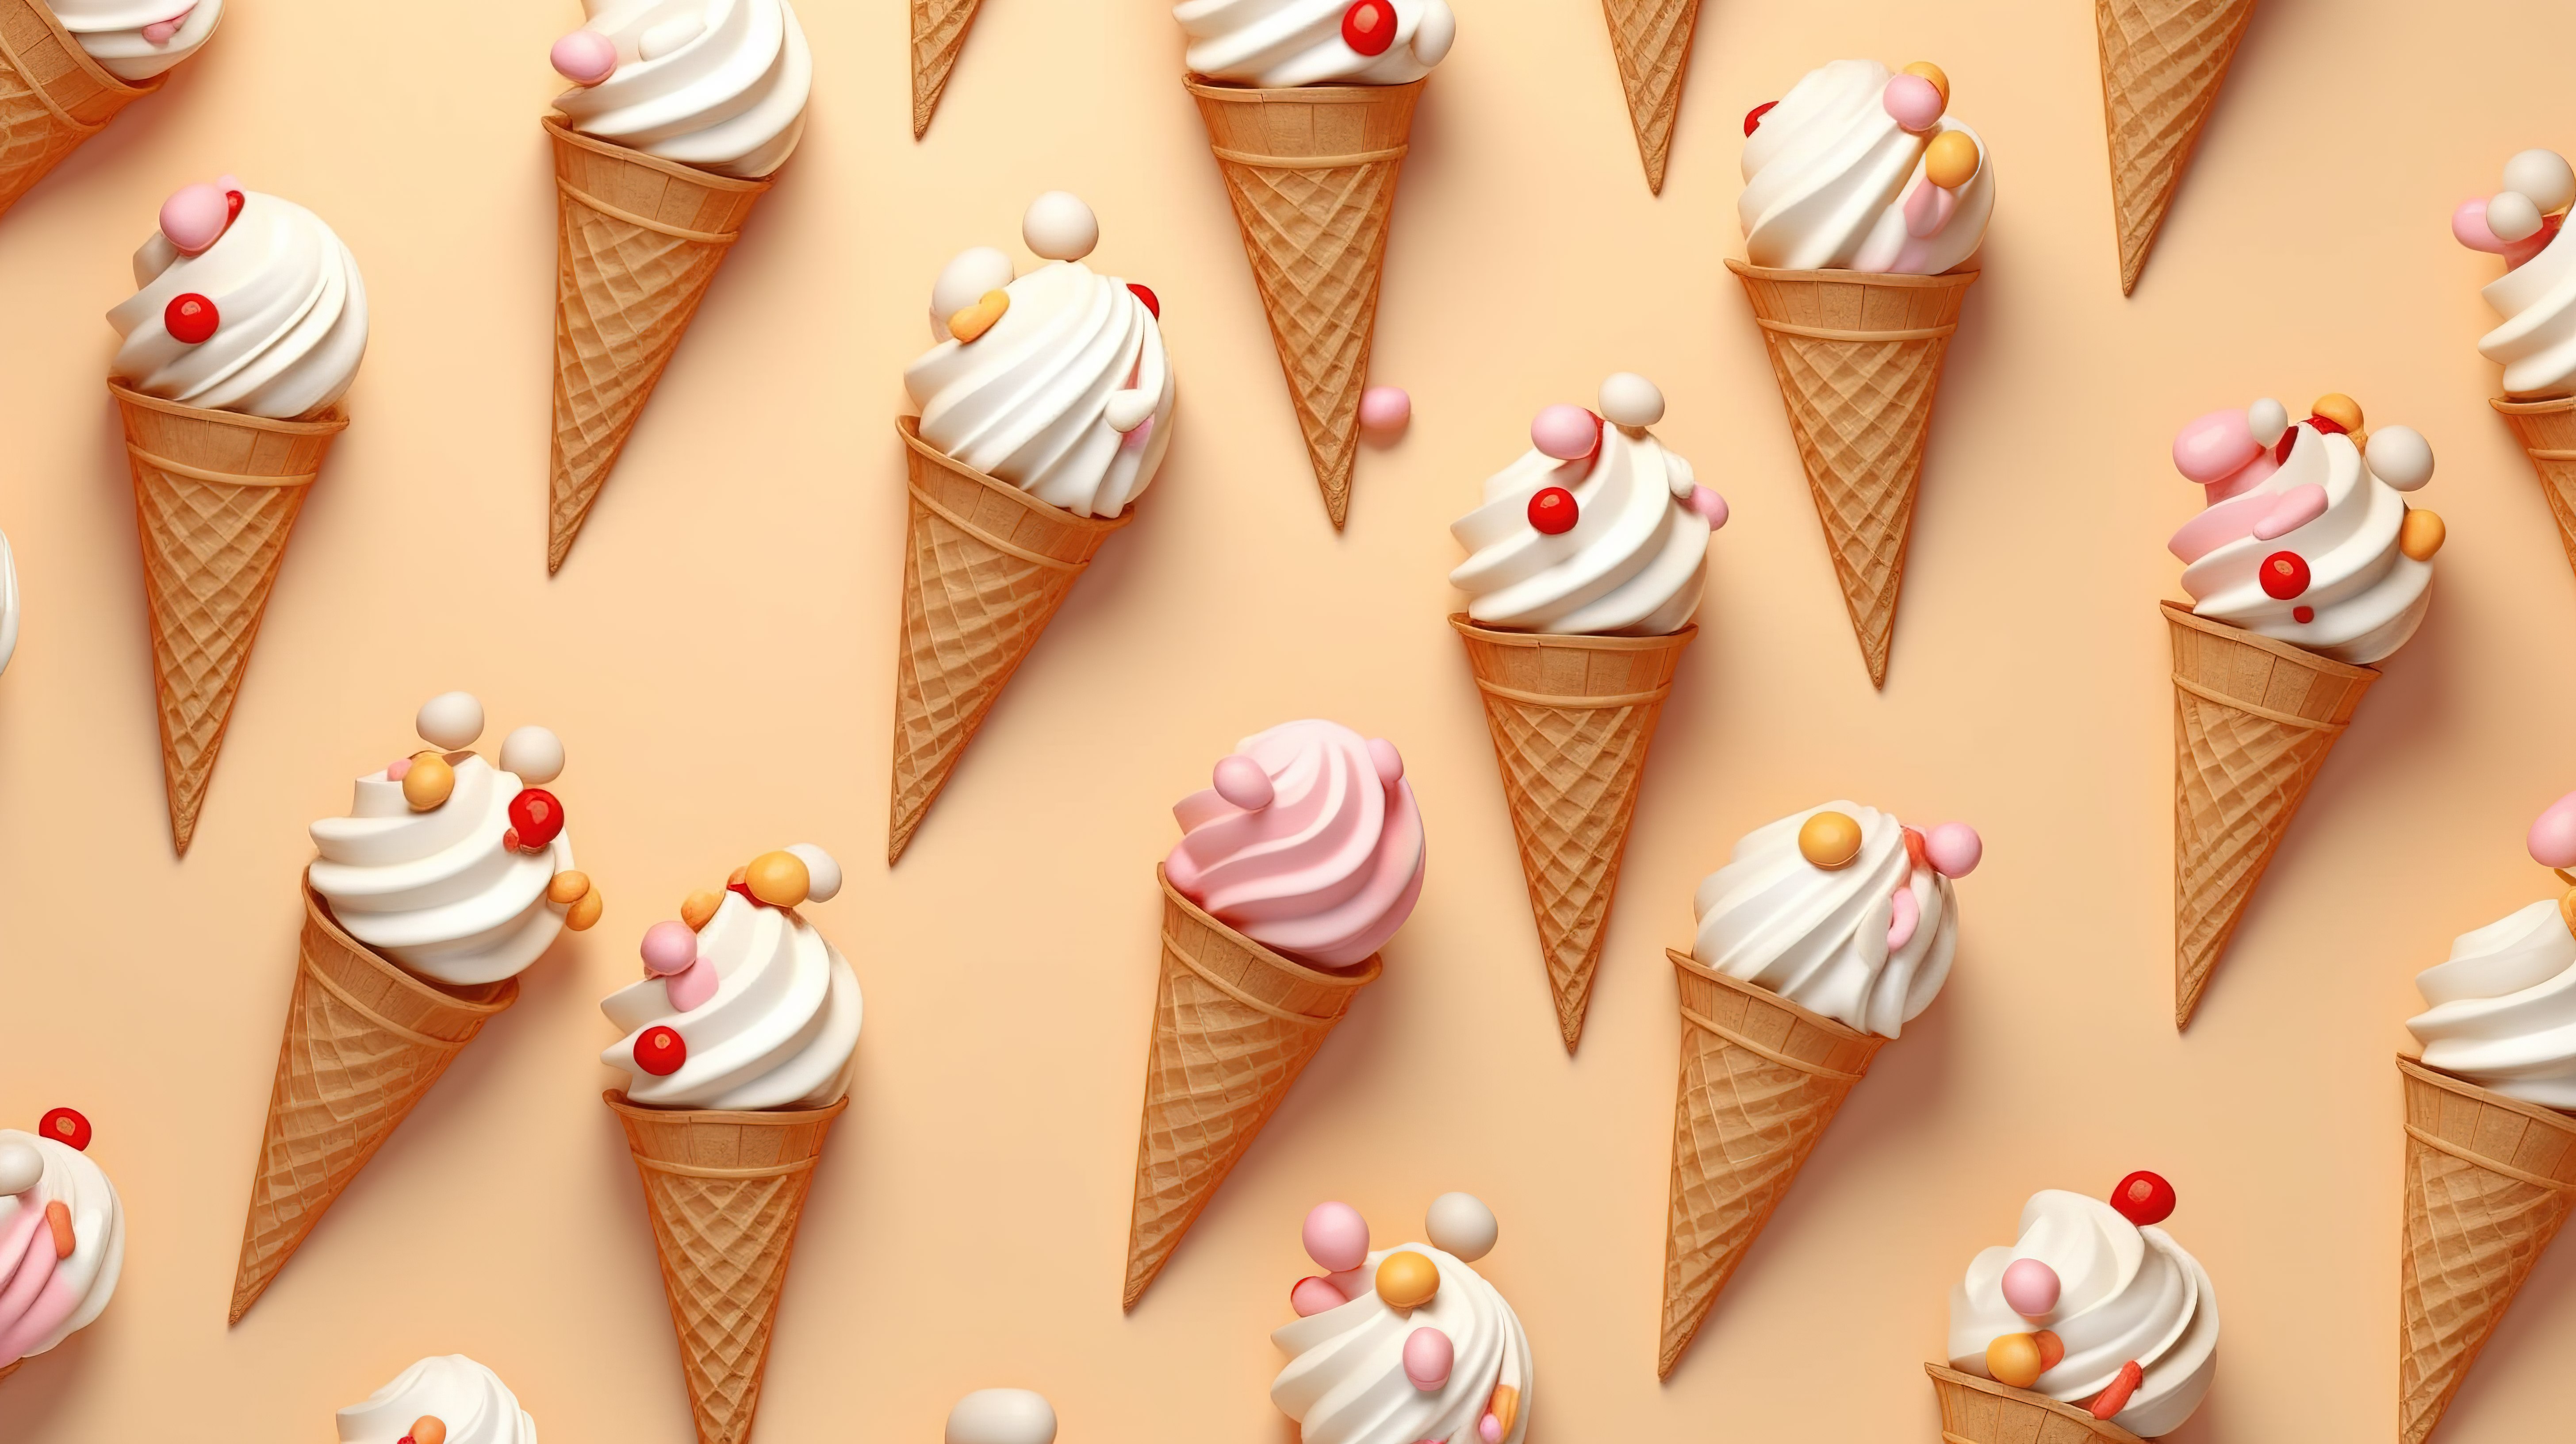 引人注目的 3D 渲染夏季背景纹理无缝图案的冰淇淋在浅棕色背景图片